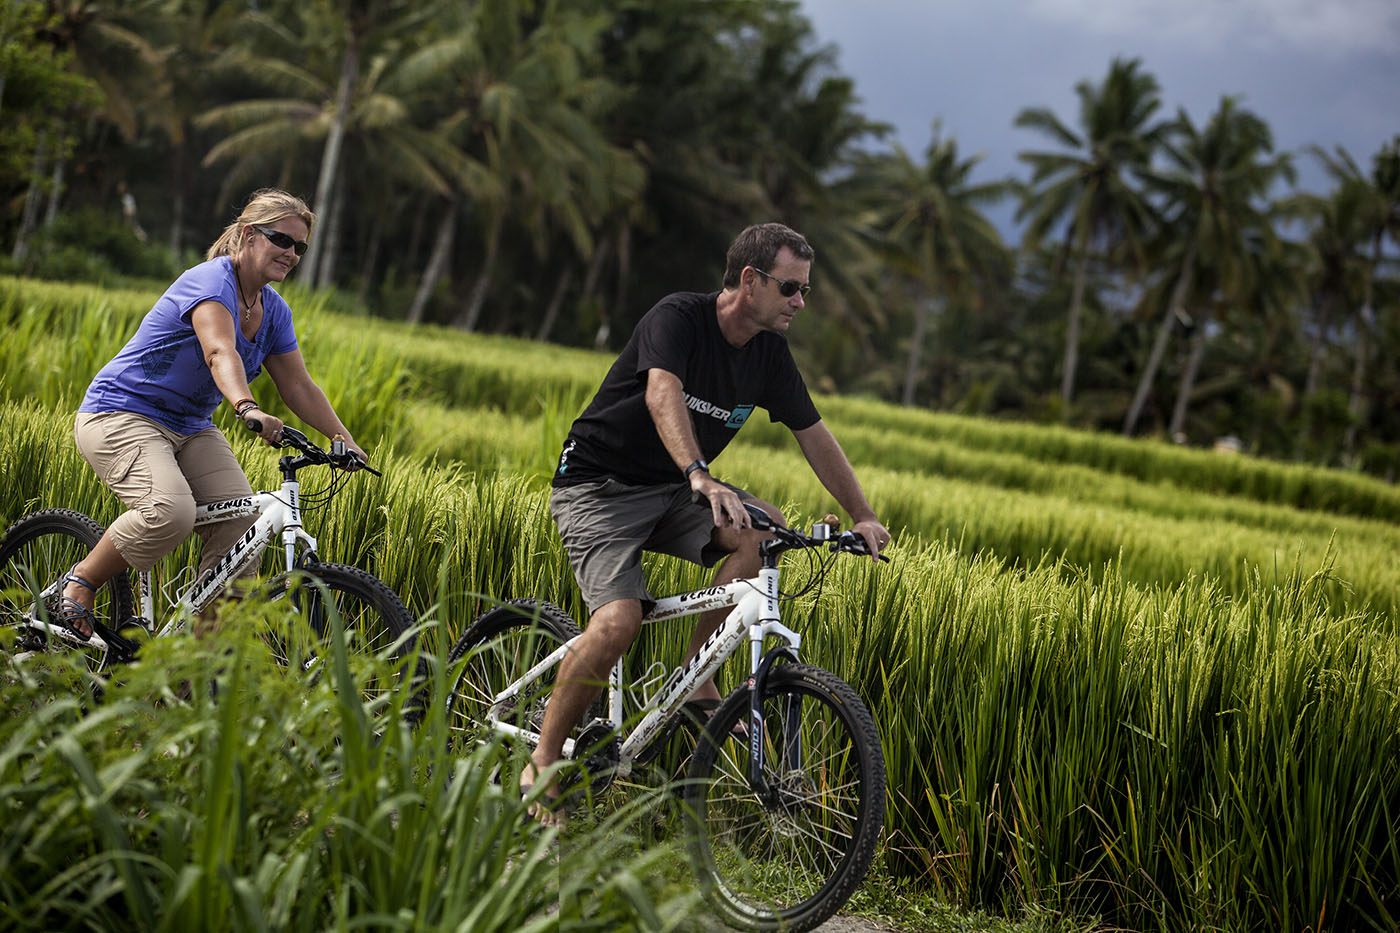 Cycling at Bali Rural Commune